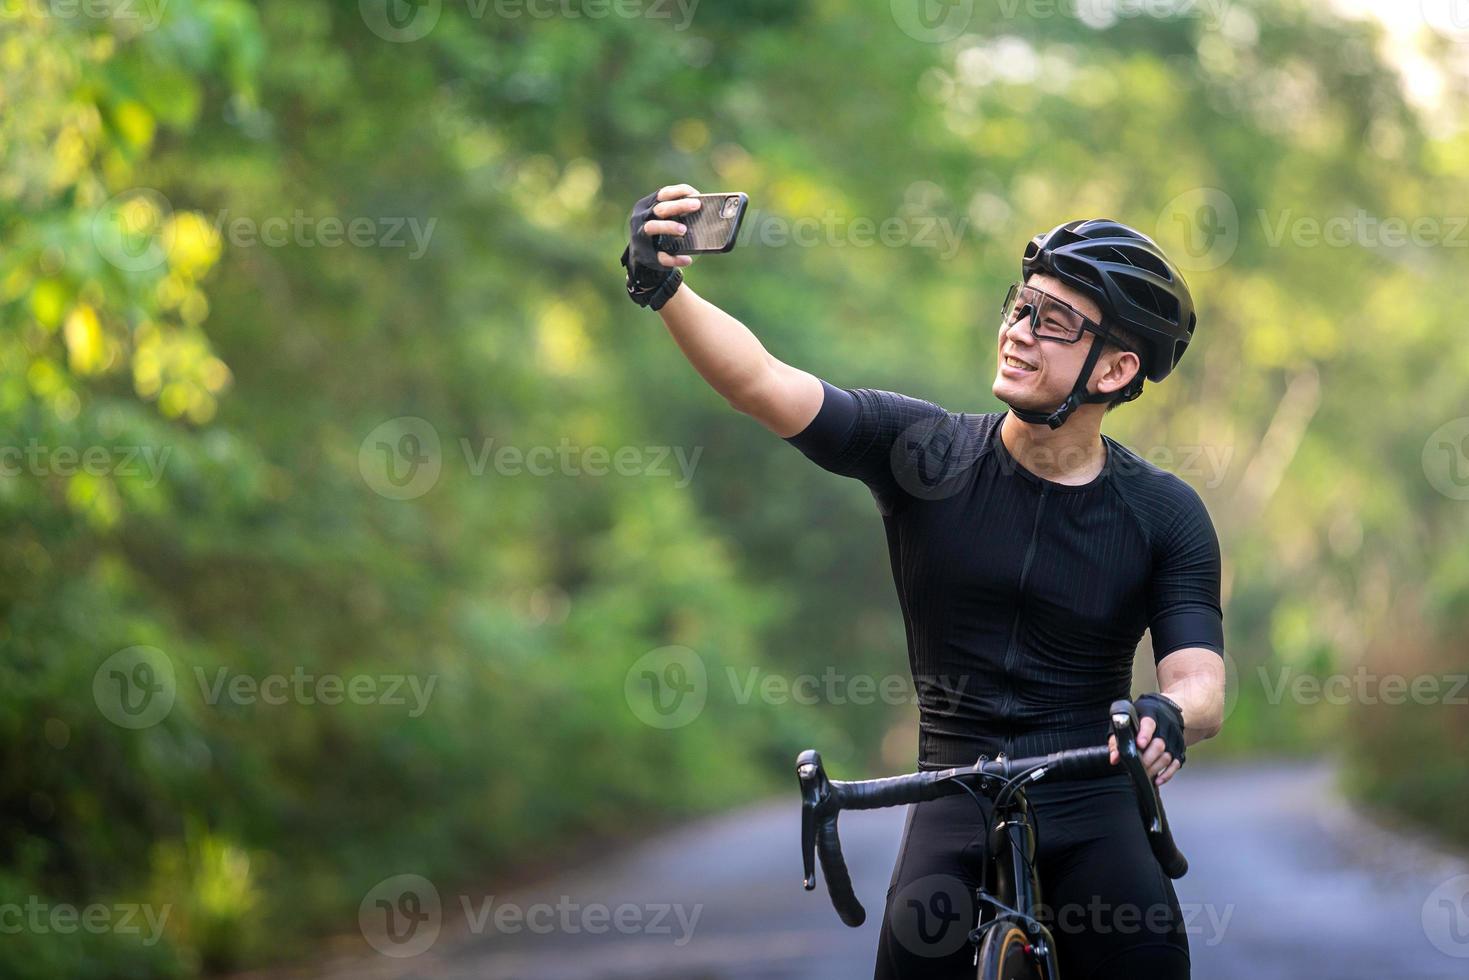 happy cycling selfie zijn foto voor sociaal tijdens rit fietsen op straat, weg, met hoge snelheid voor oefenhobby en competitie in professionele tour